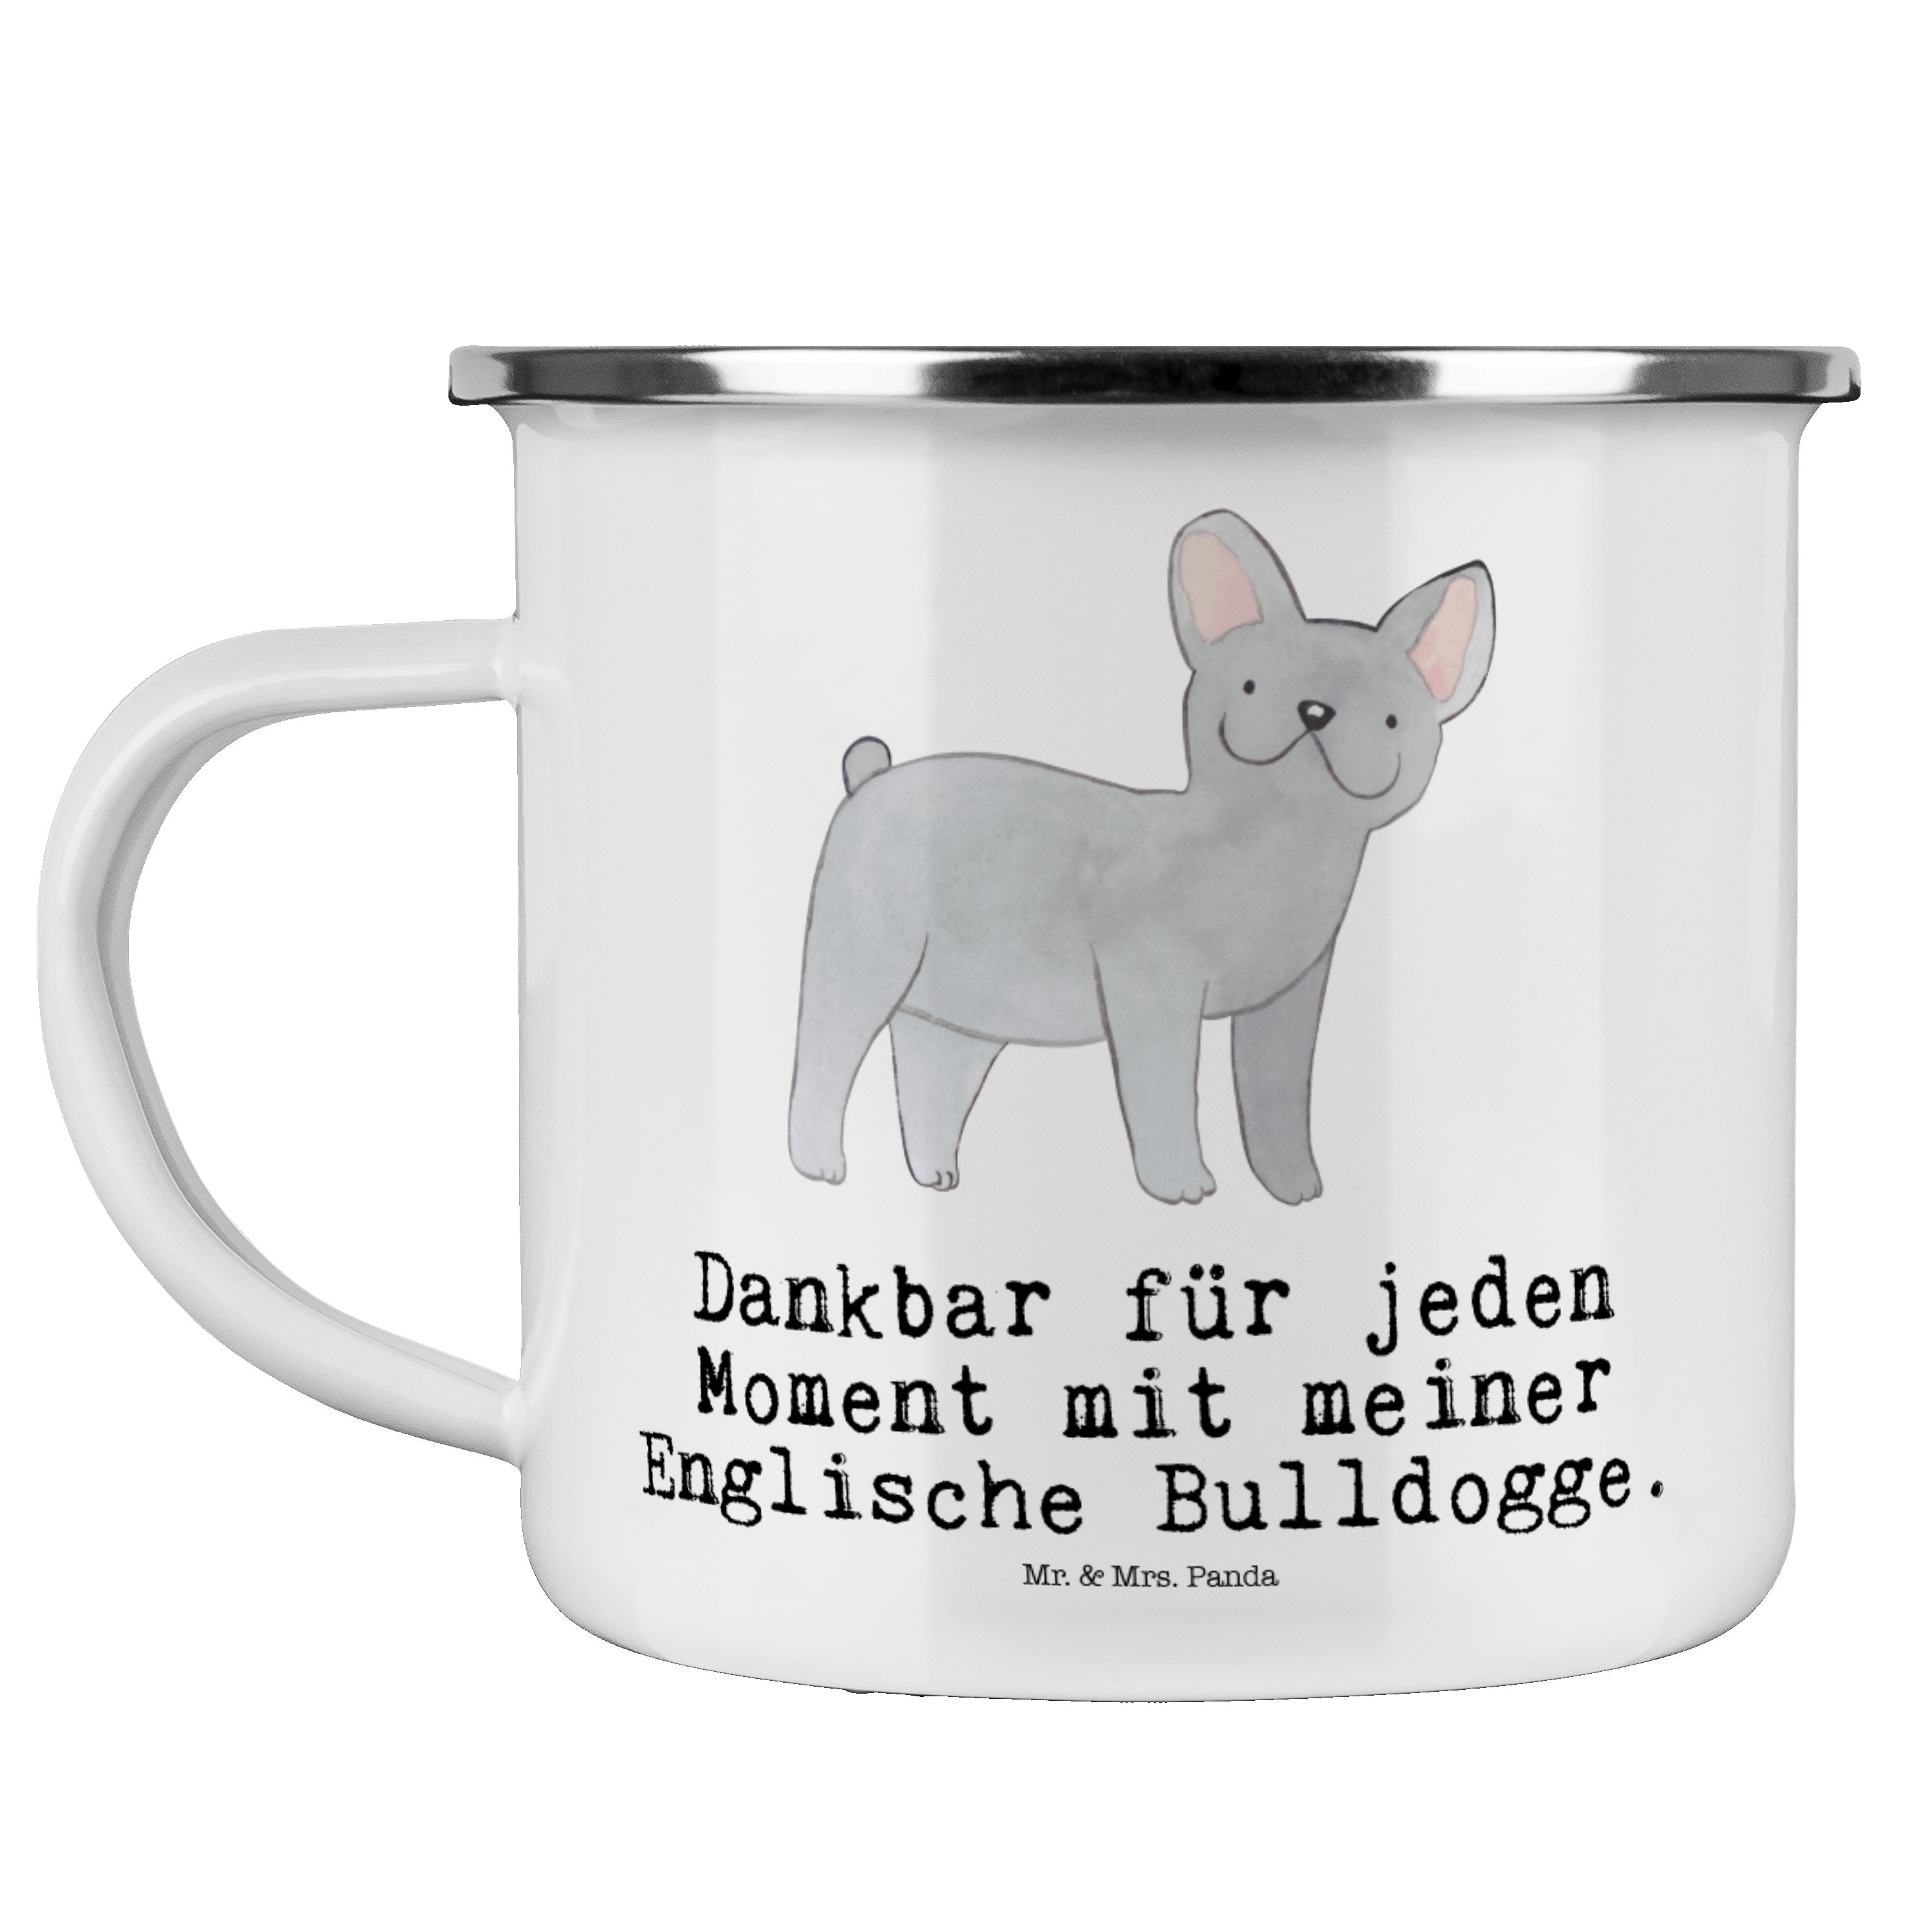 Mr. & Mrs. Panda Becher Englische Bulldogge Moment - Weiß - Geschenk, Rassehund, Metalltasse, Emaille